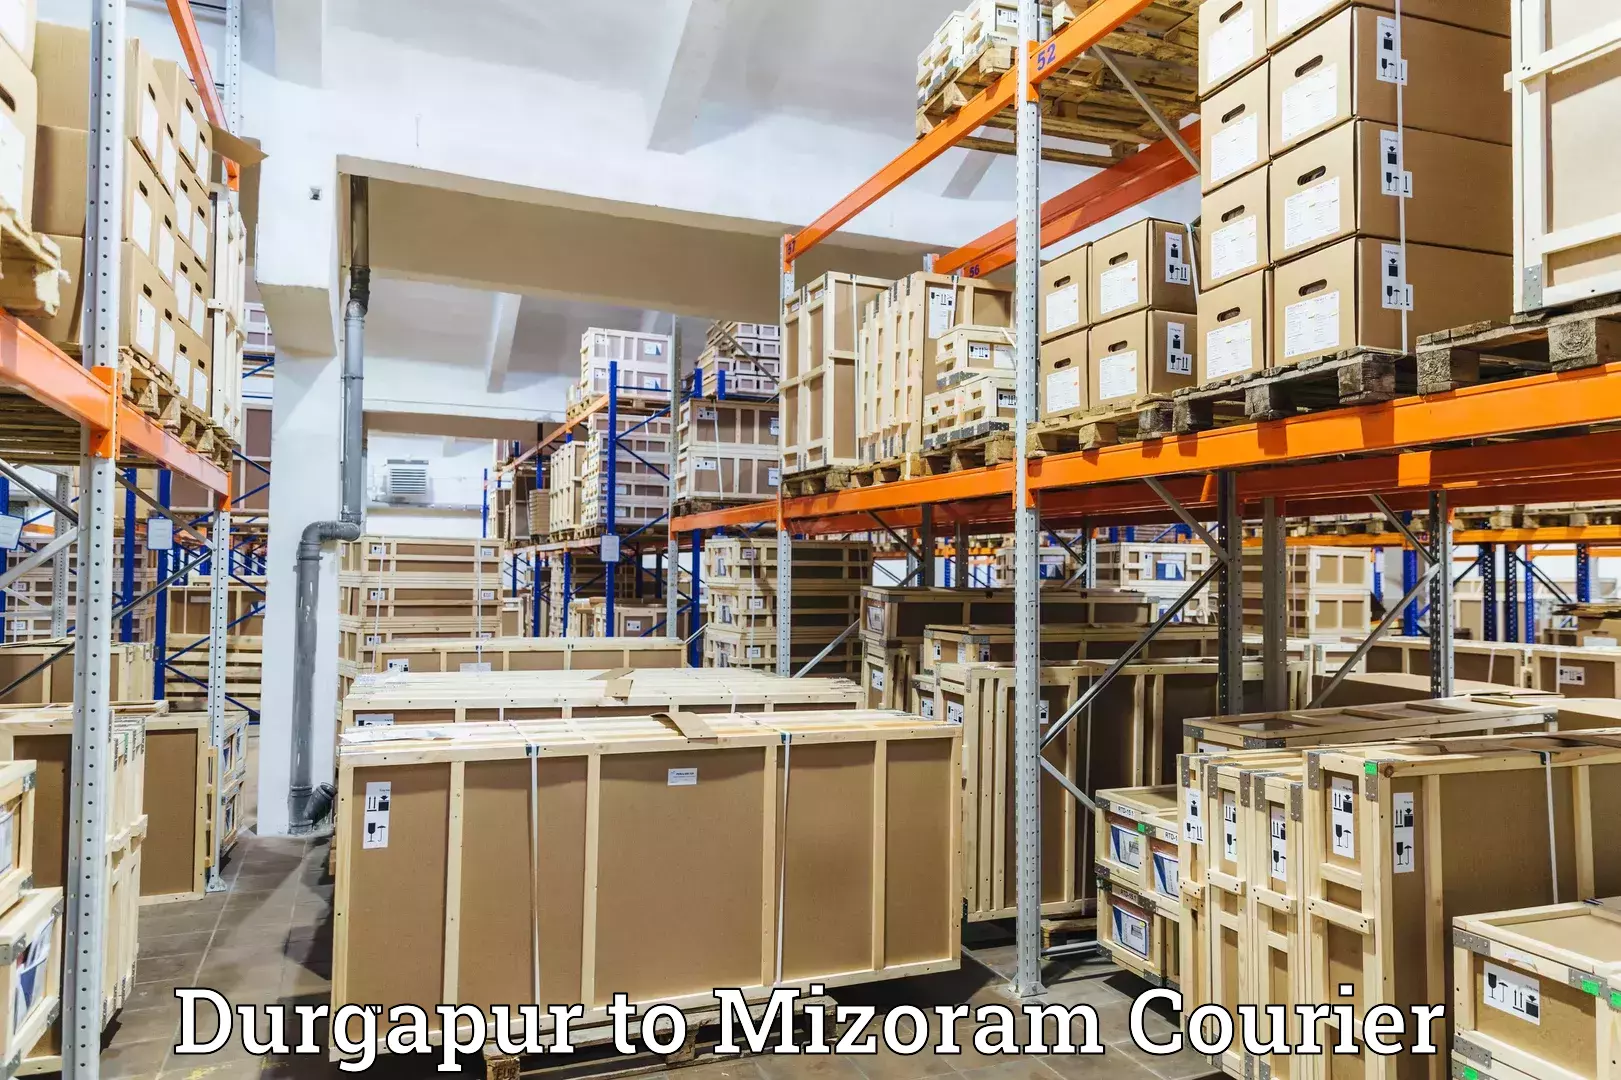 International parcel service Durgapur to Thenzawl